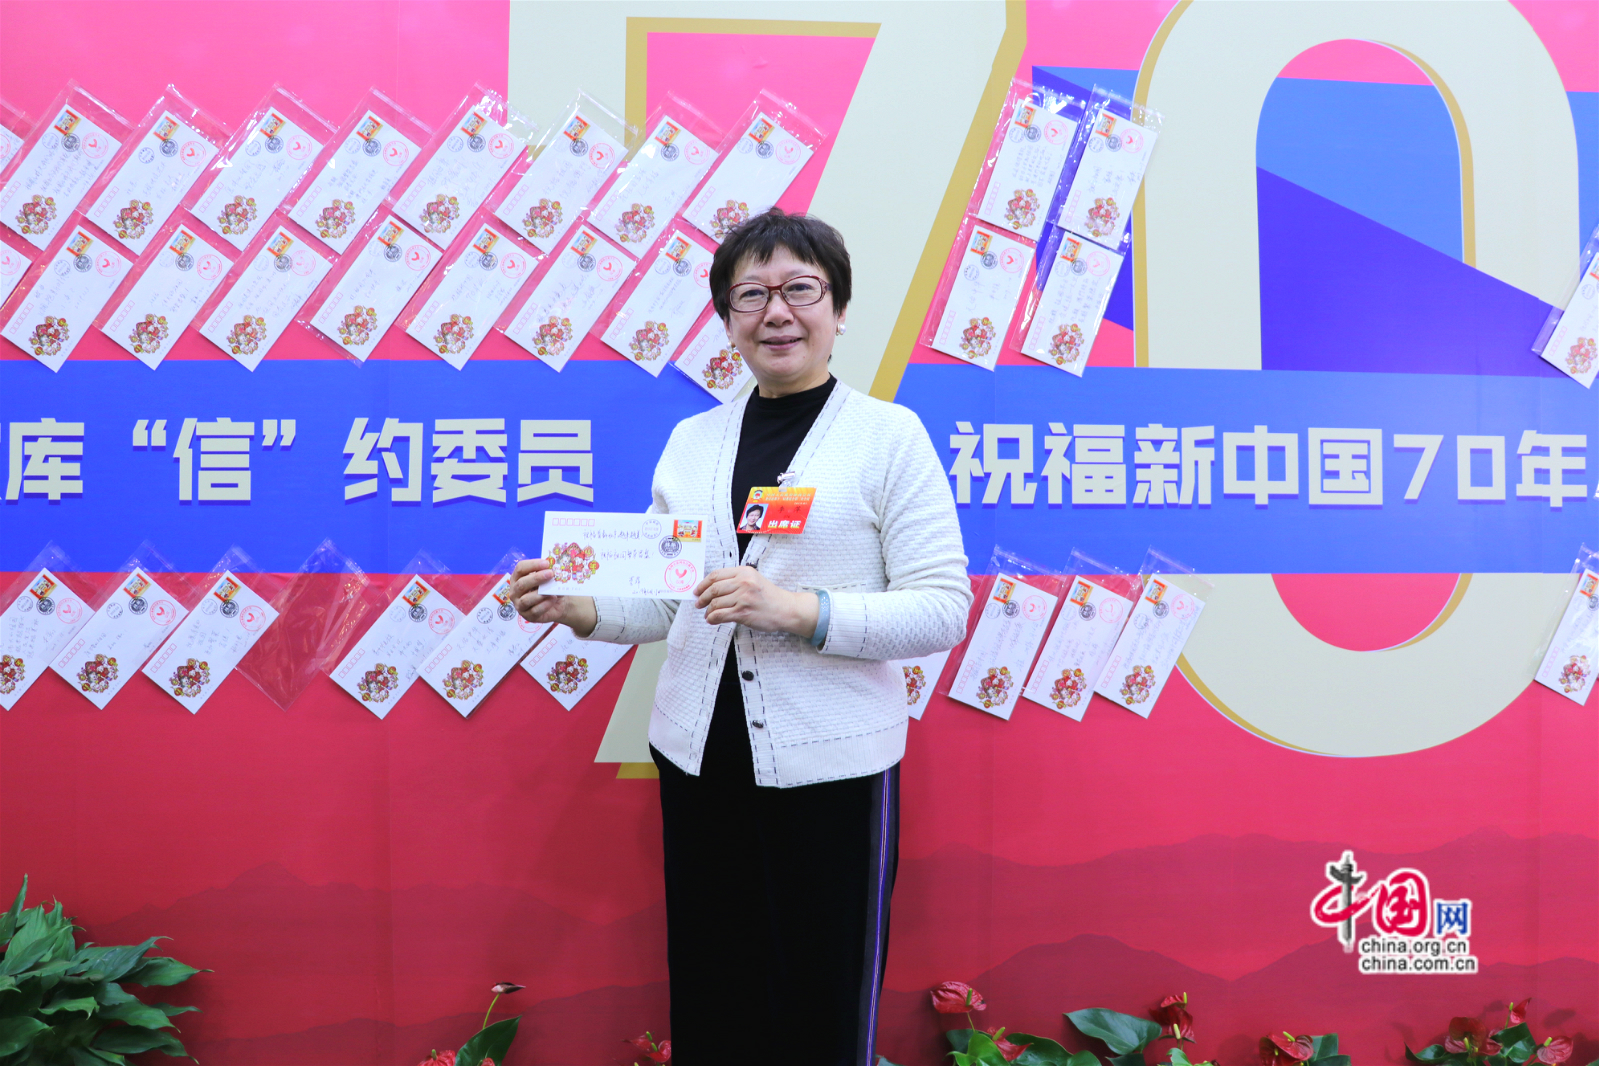 北京市政协委员李萍展示为祖国70年书写的祝福语。中国网记者胡俊摄